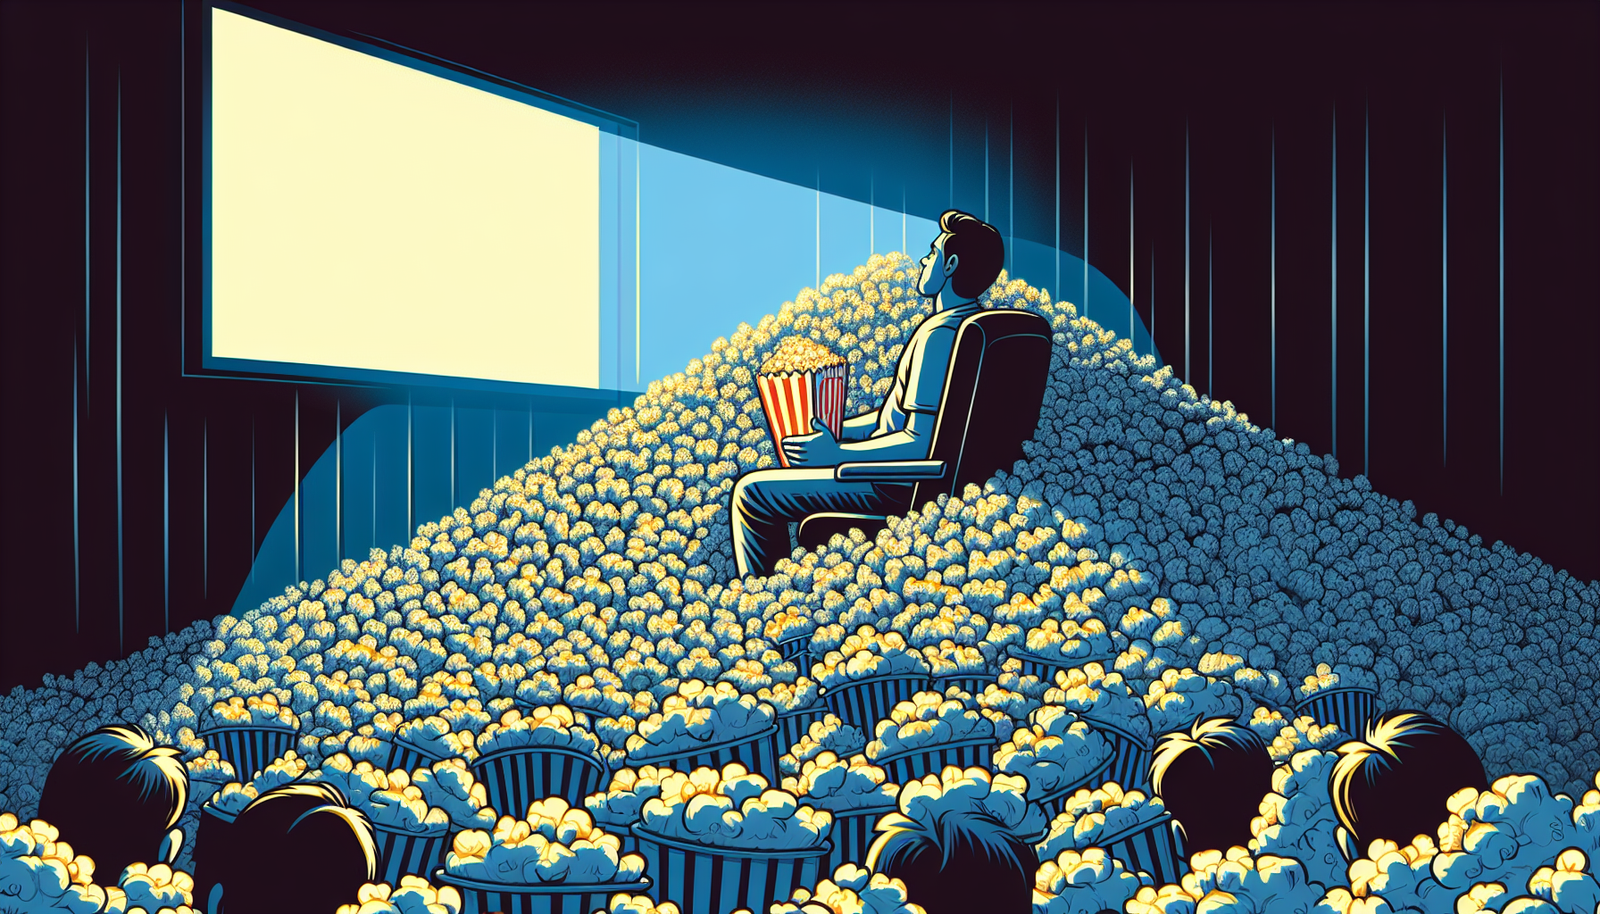 scopri se i popcorn da $ 4,50 di Netflix sono all'altezza della pubblicità come spuntino cinematografico definitivo o semplicemente un'indulgenza troppo cara in questo articolo stimolante.